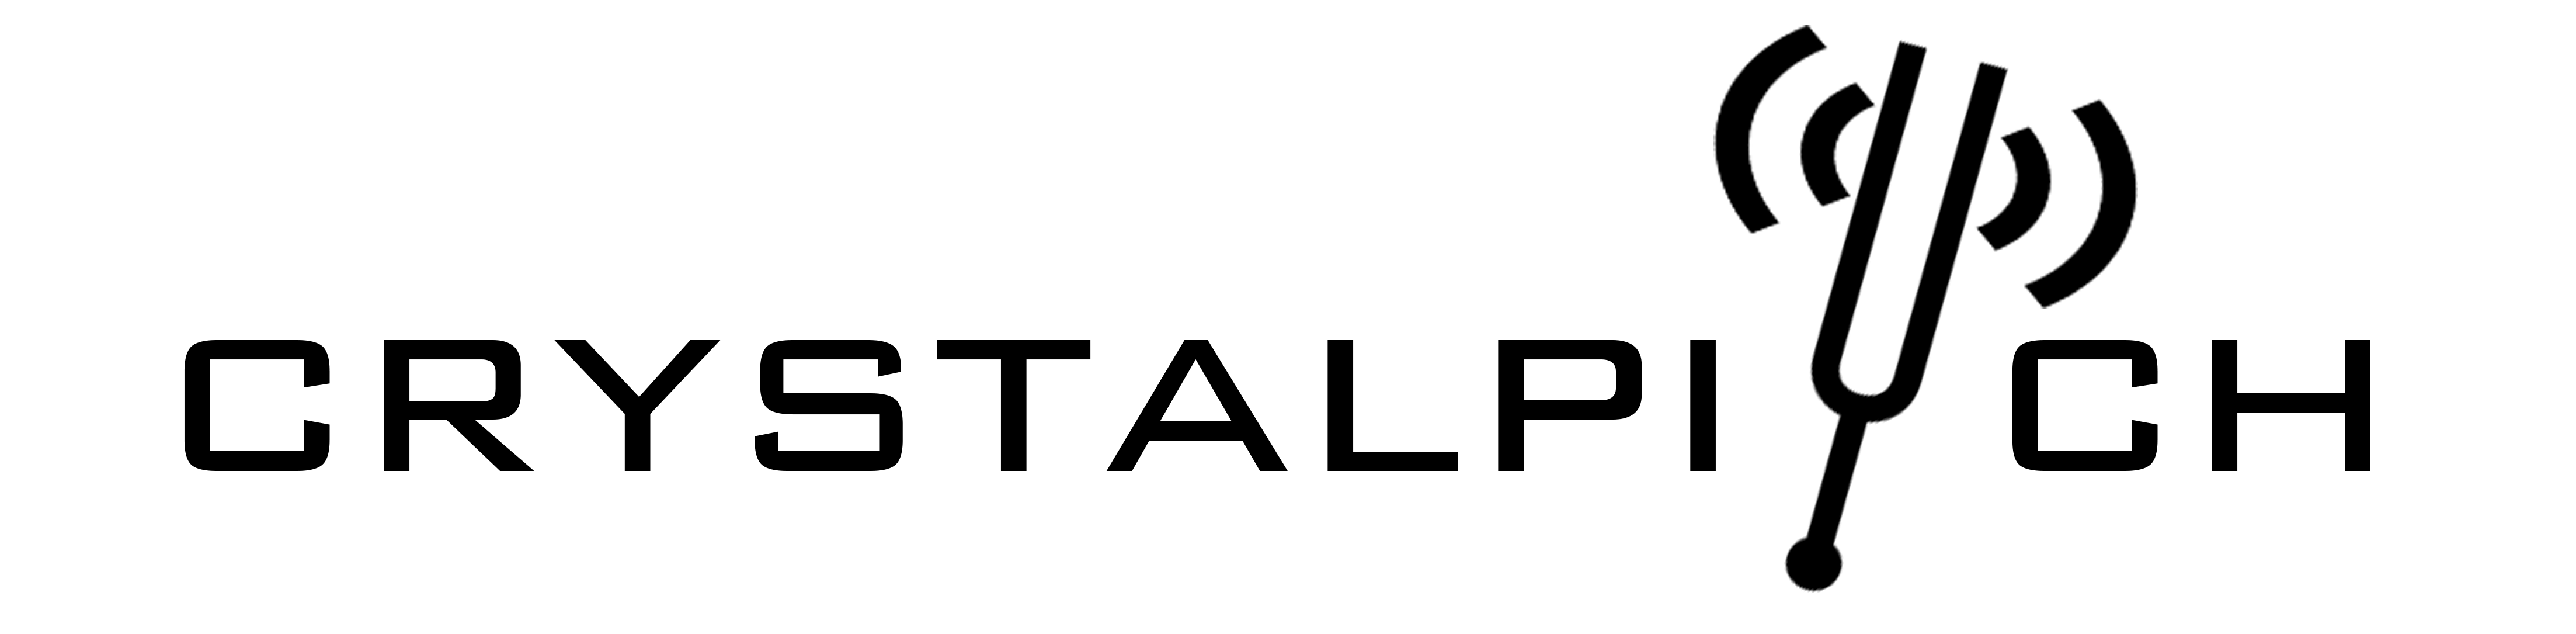 Crystal Pitch Logo